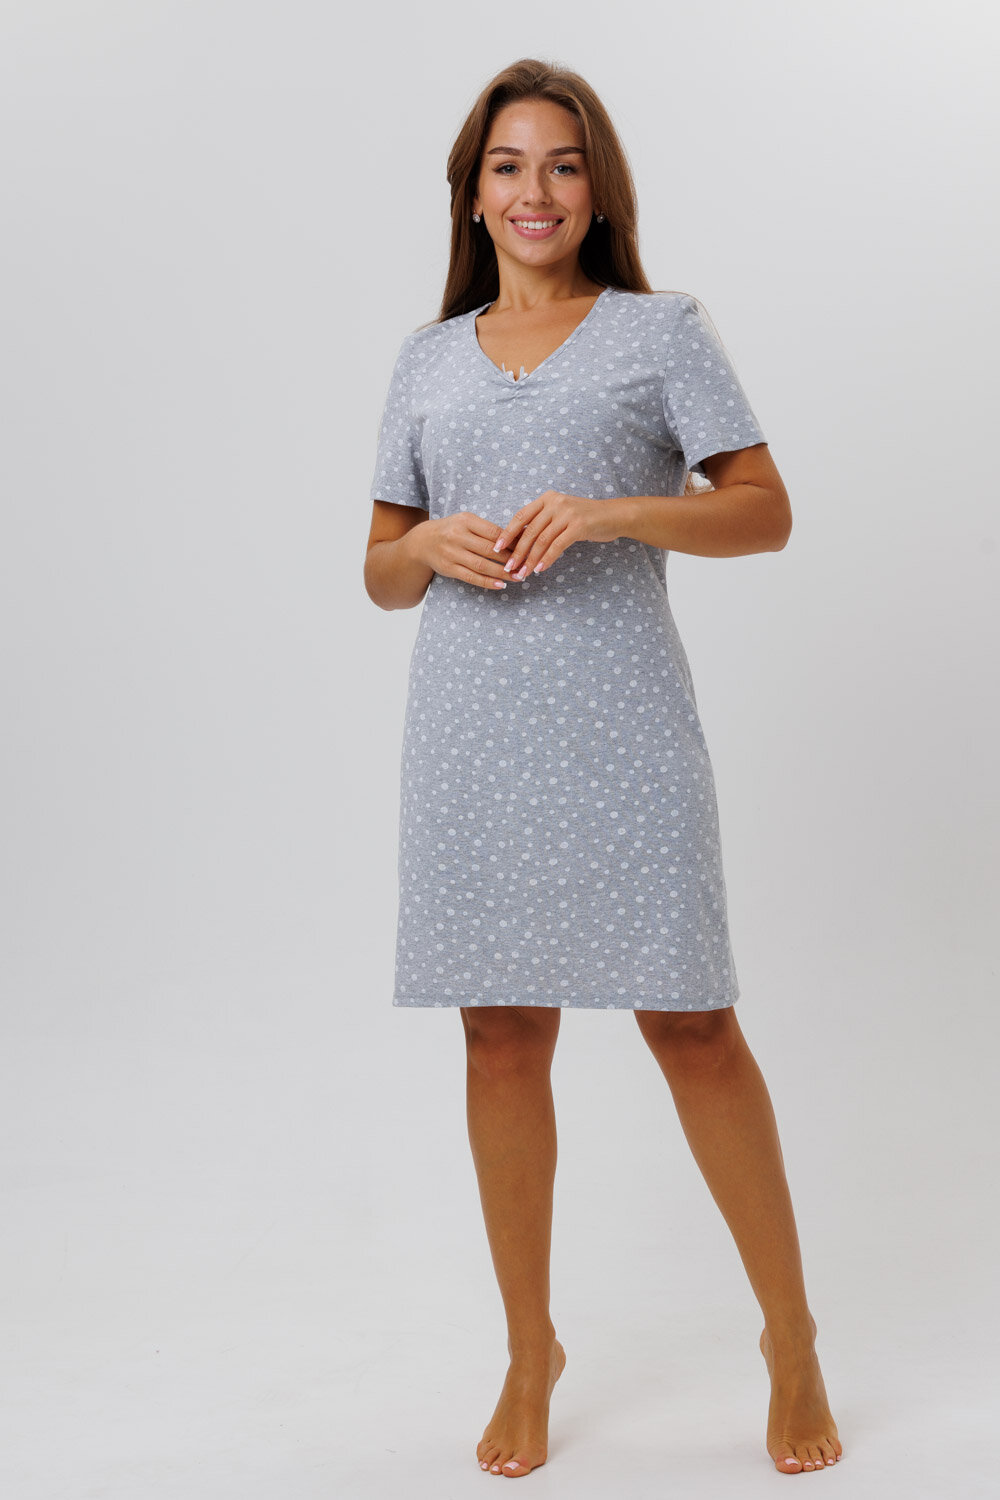 Сорочка Modellini укороченная, короткий рукав, размер 48, серый - фотография № 2